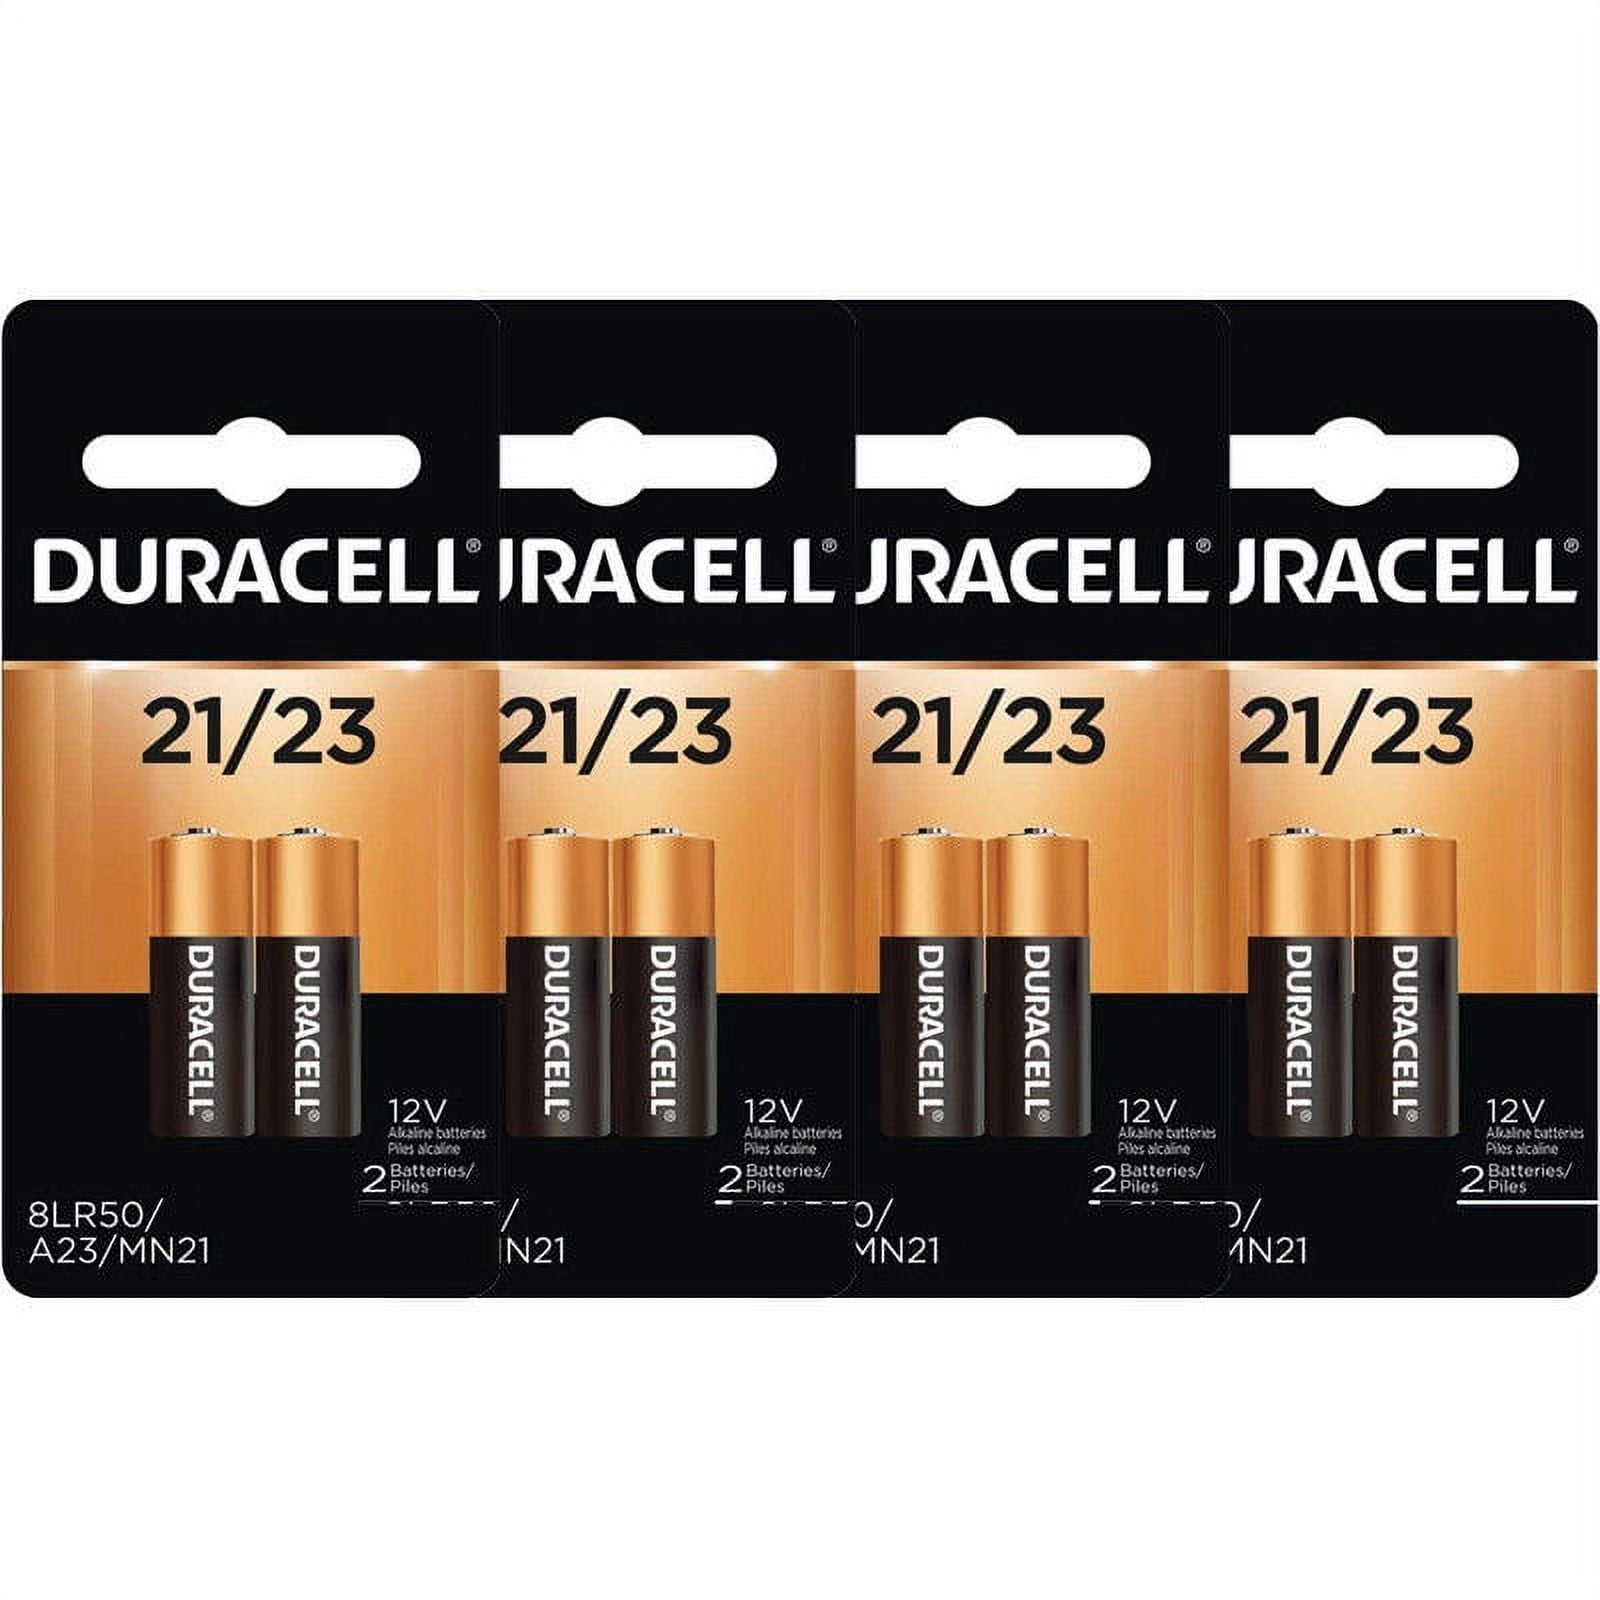 8 Duracell A23 21/23 Batteries 12V 23A, A23BP, GP23, MN21, 23GA, 23AE